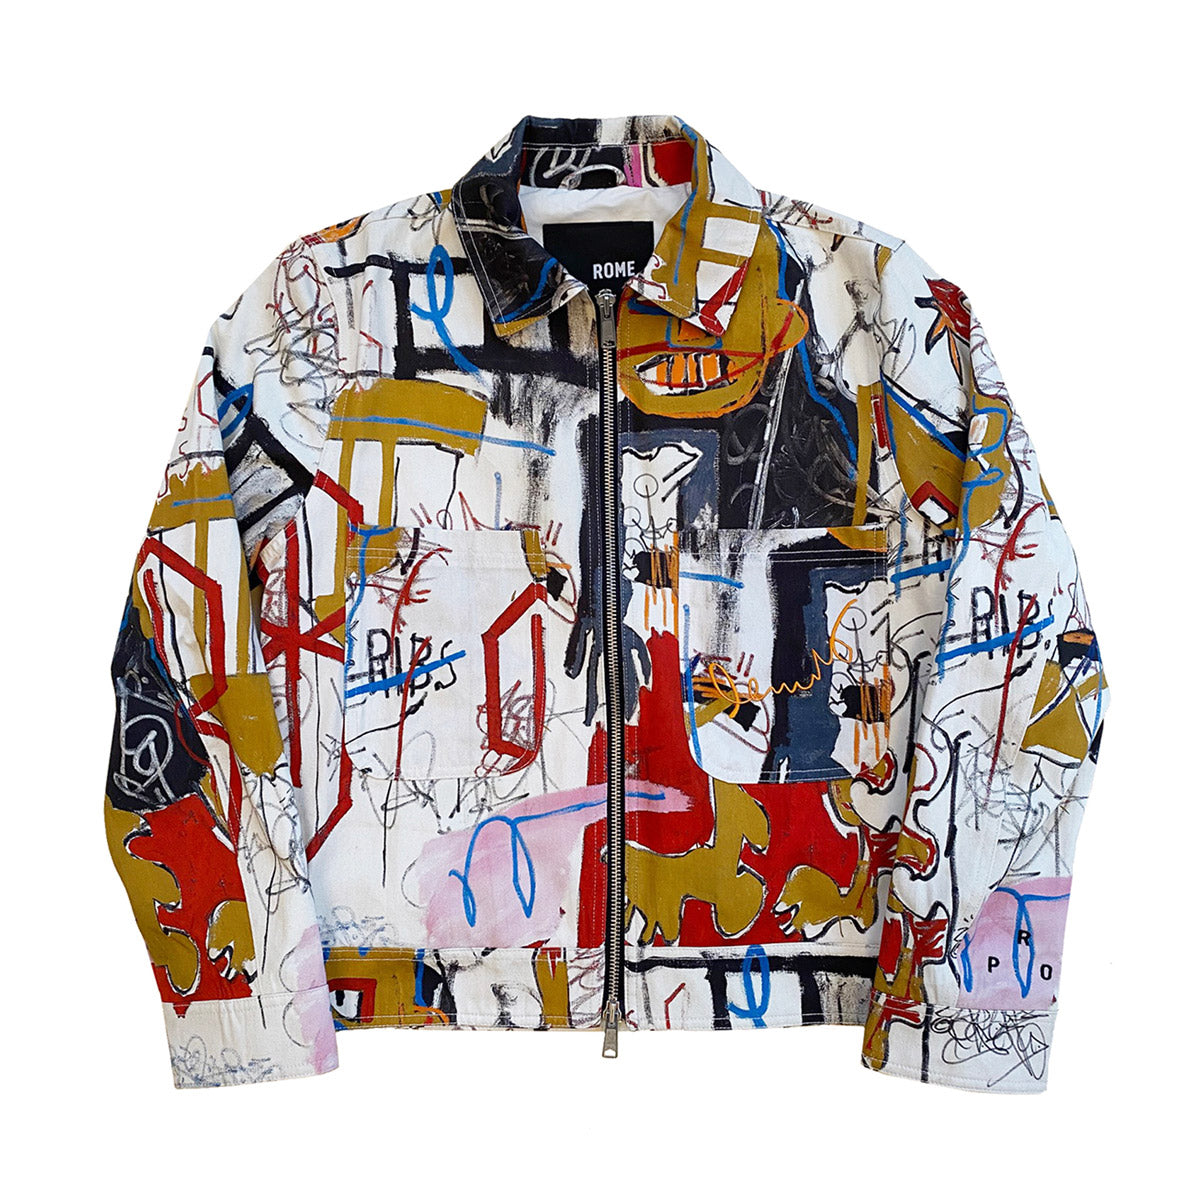 Basquiat "A-One" Unisex Mechanic's Jacket